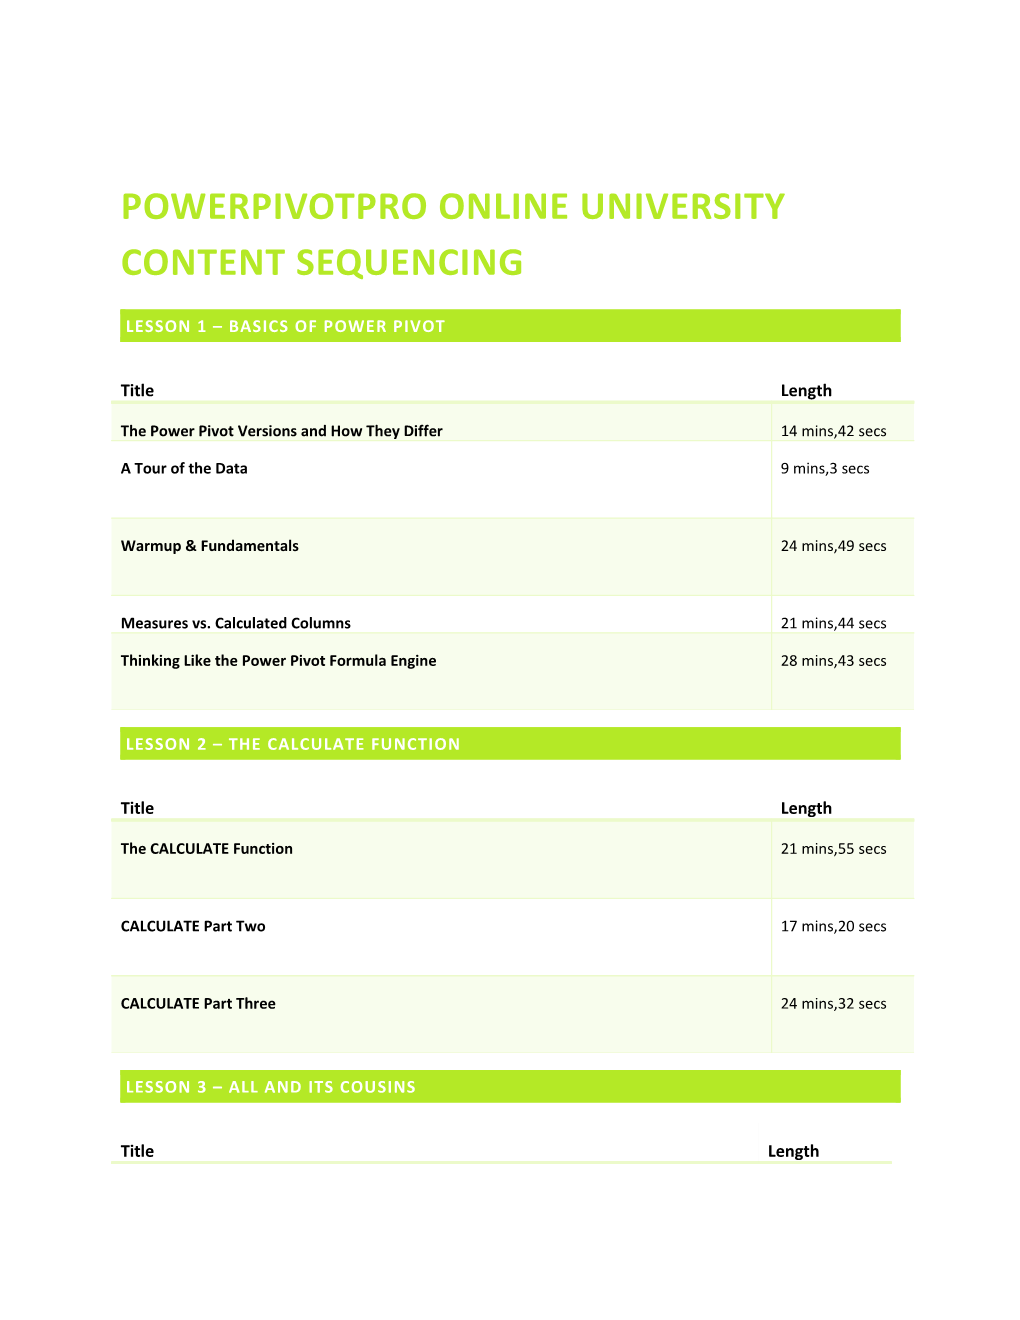 Powerpivotpro Online University Content Sequencing